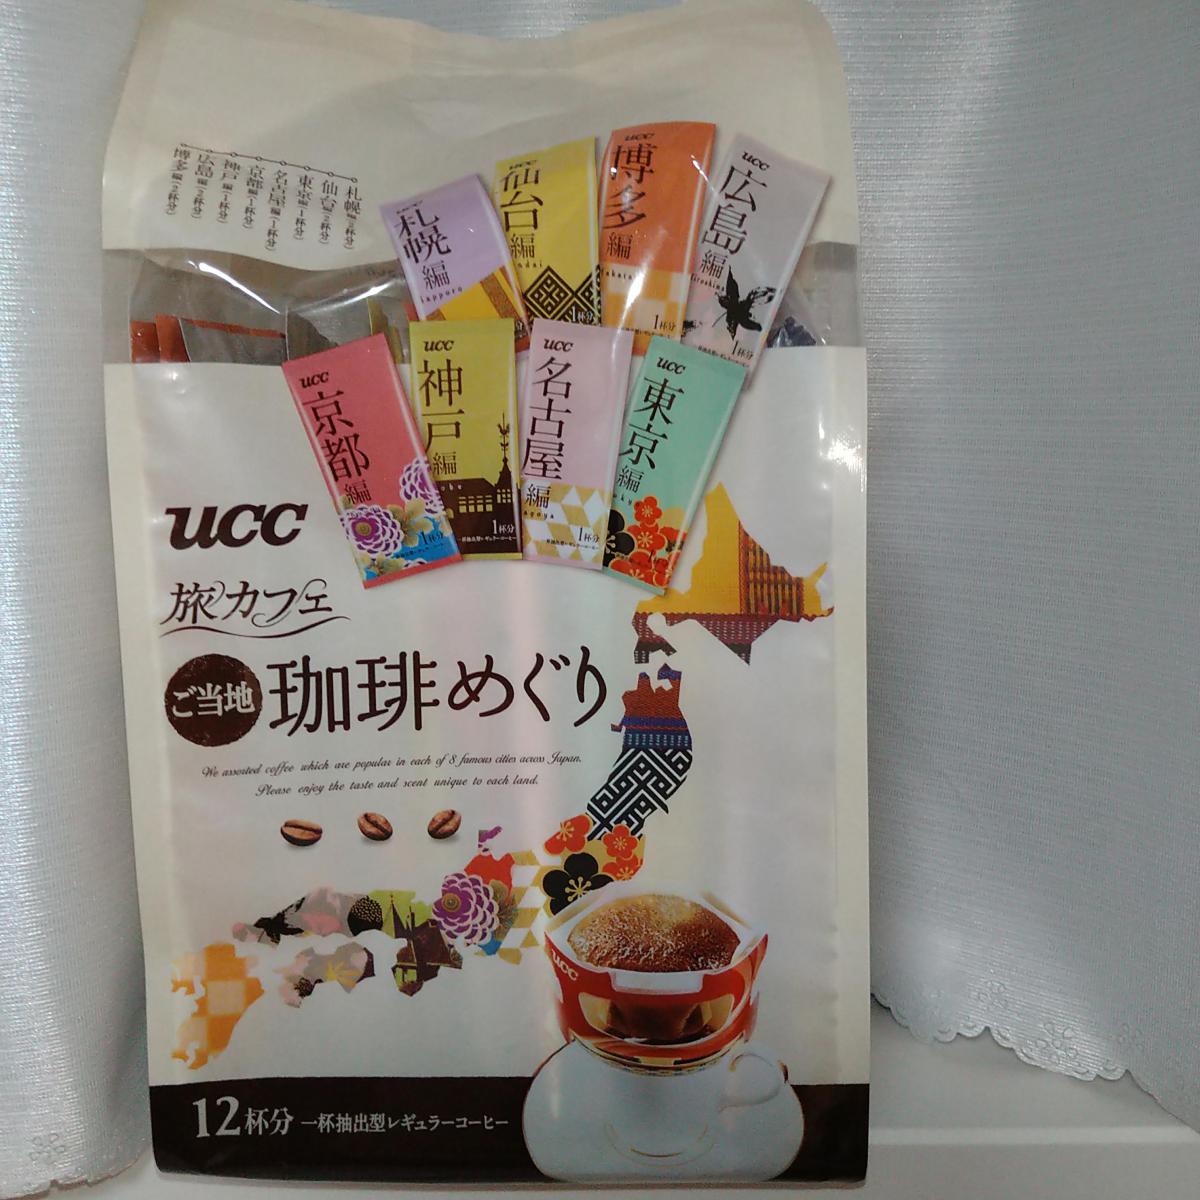 UCC 旅カフェ ドリップコーヒー ご当地珈琲めぐりの商品ページ